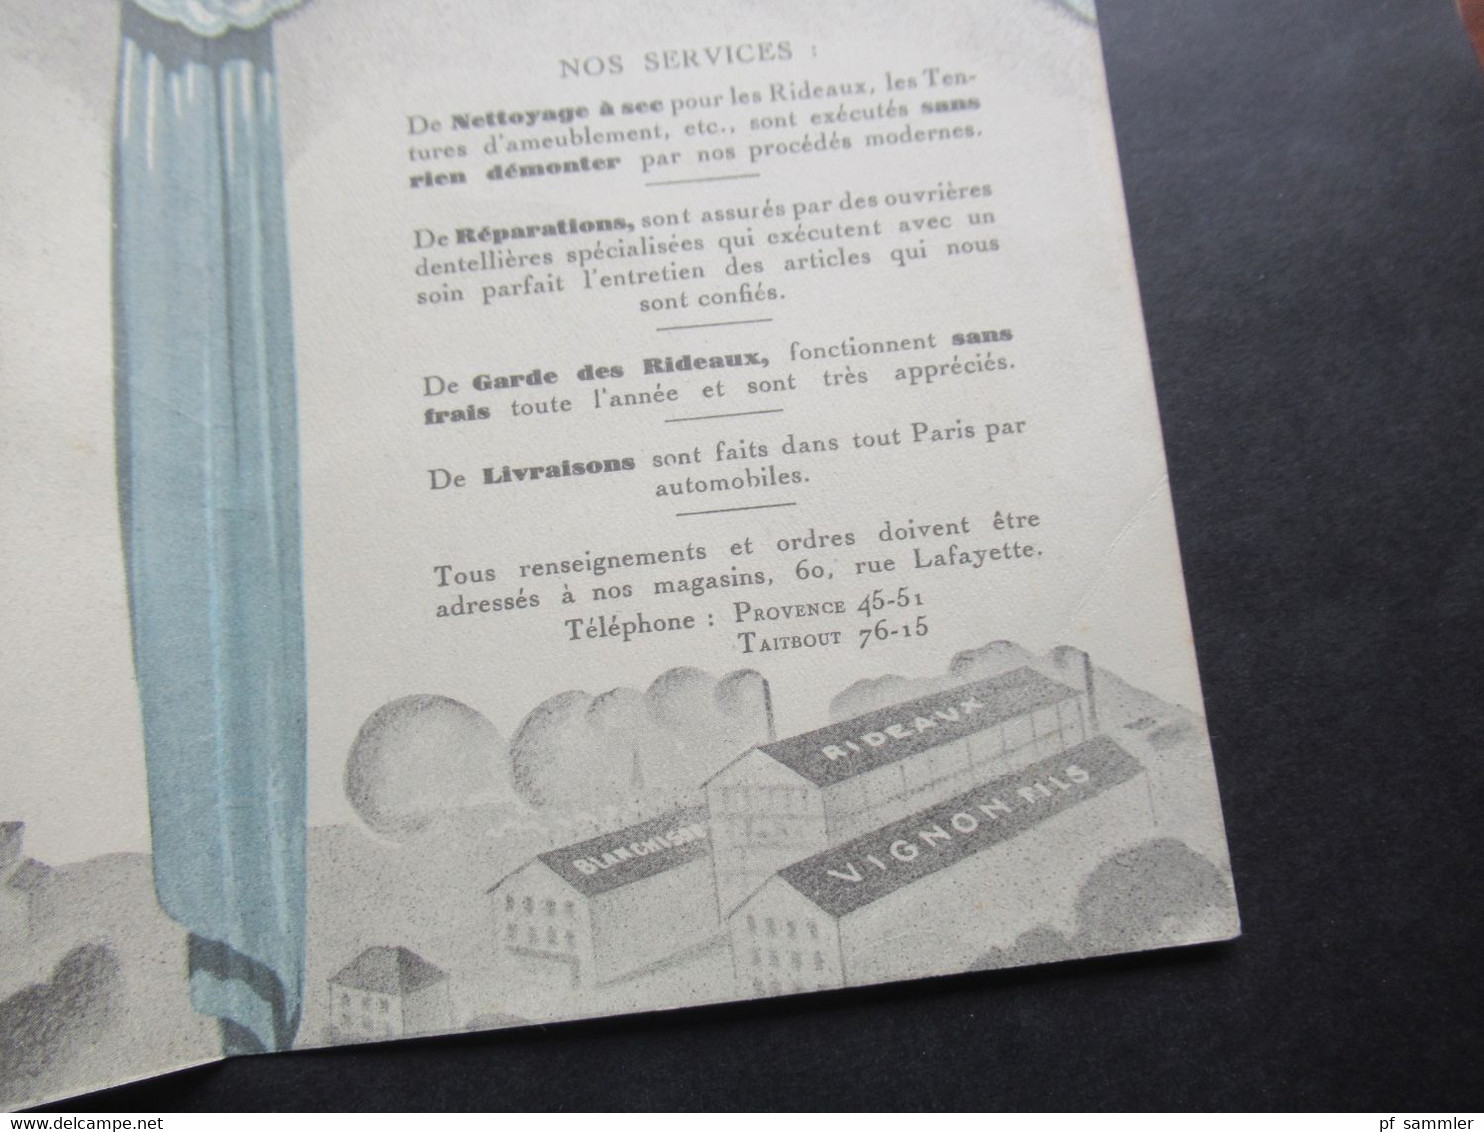 Sehr dekorative Werbekarte Art Déco ca.1920er Jahre Vignon Fils Paris Blanchisserie Speciale de Rideaux